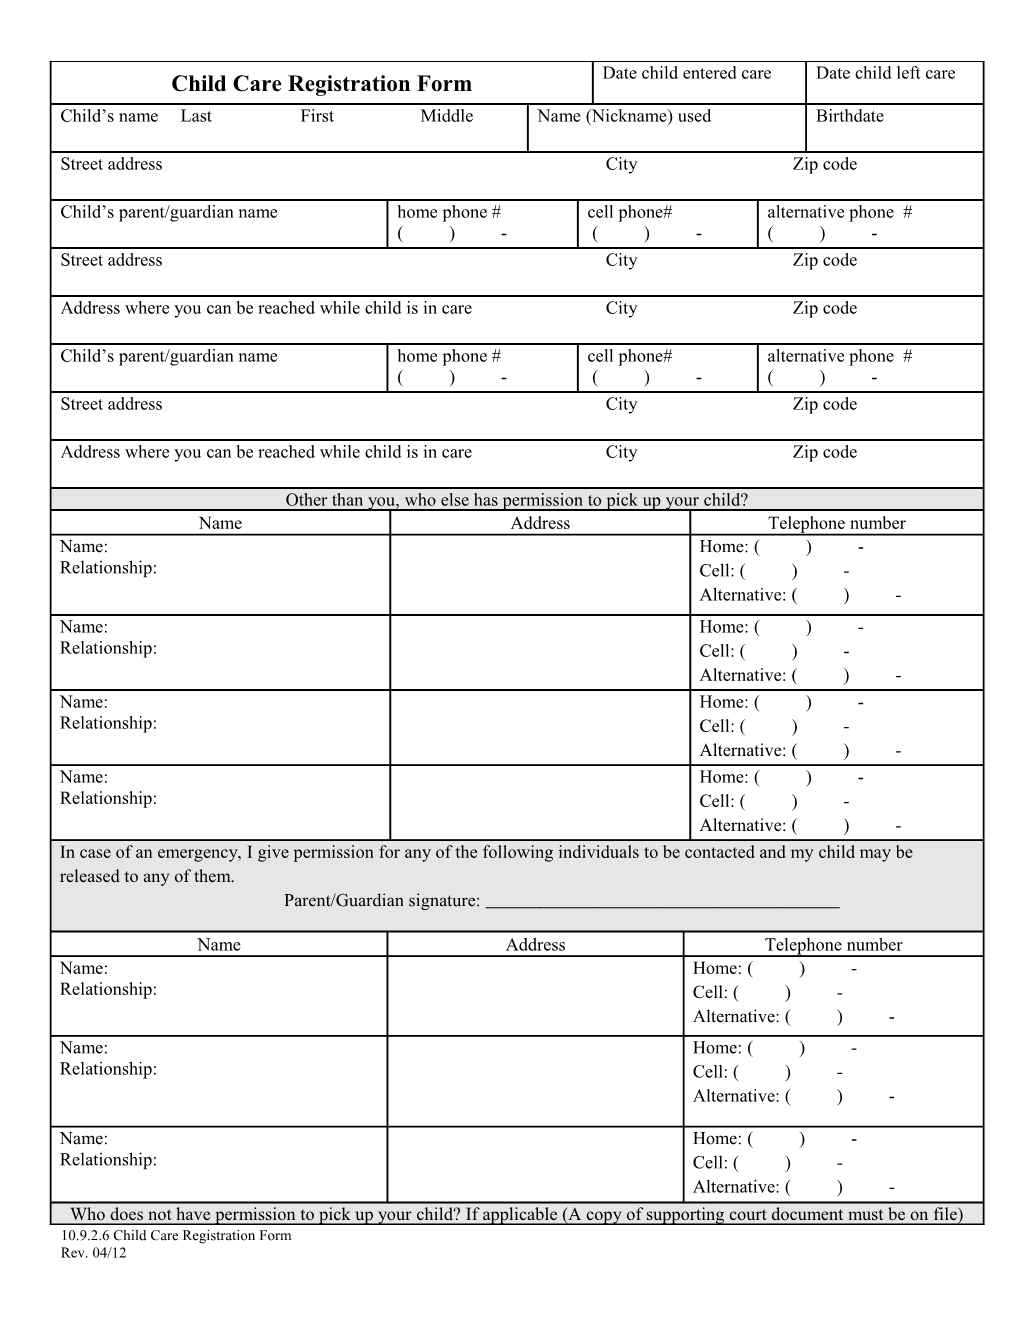 10.9.2.6 Child Care Registration Form